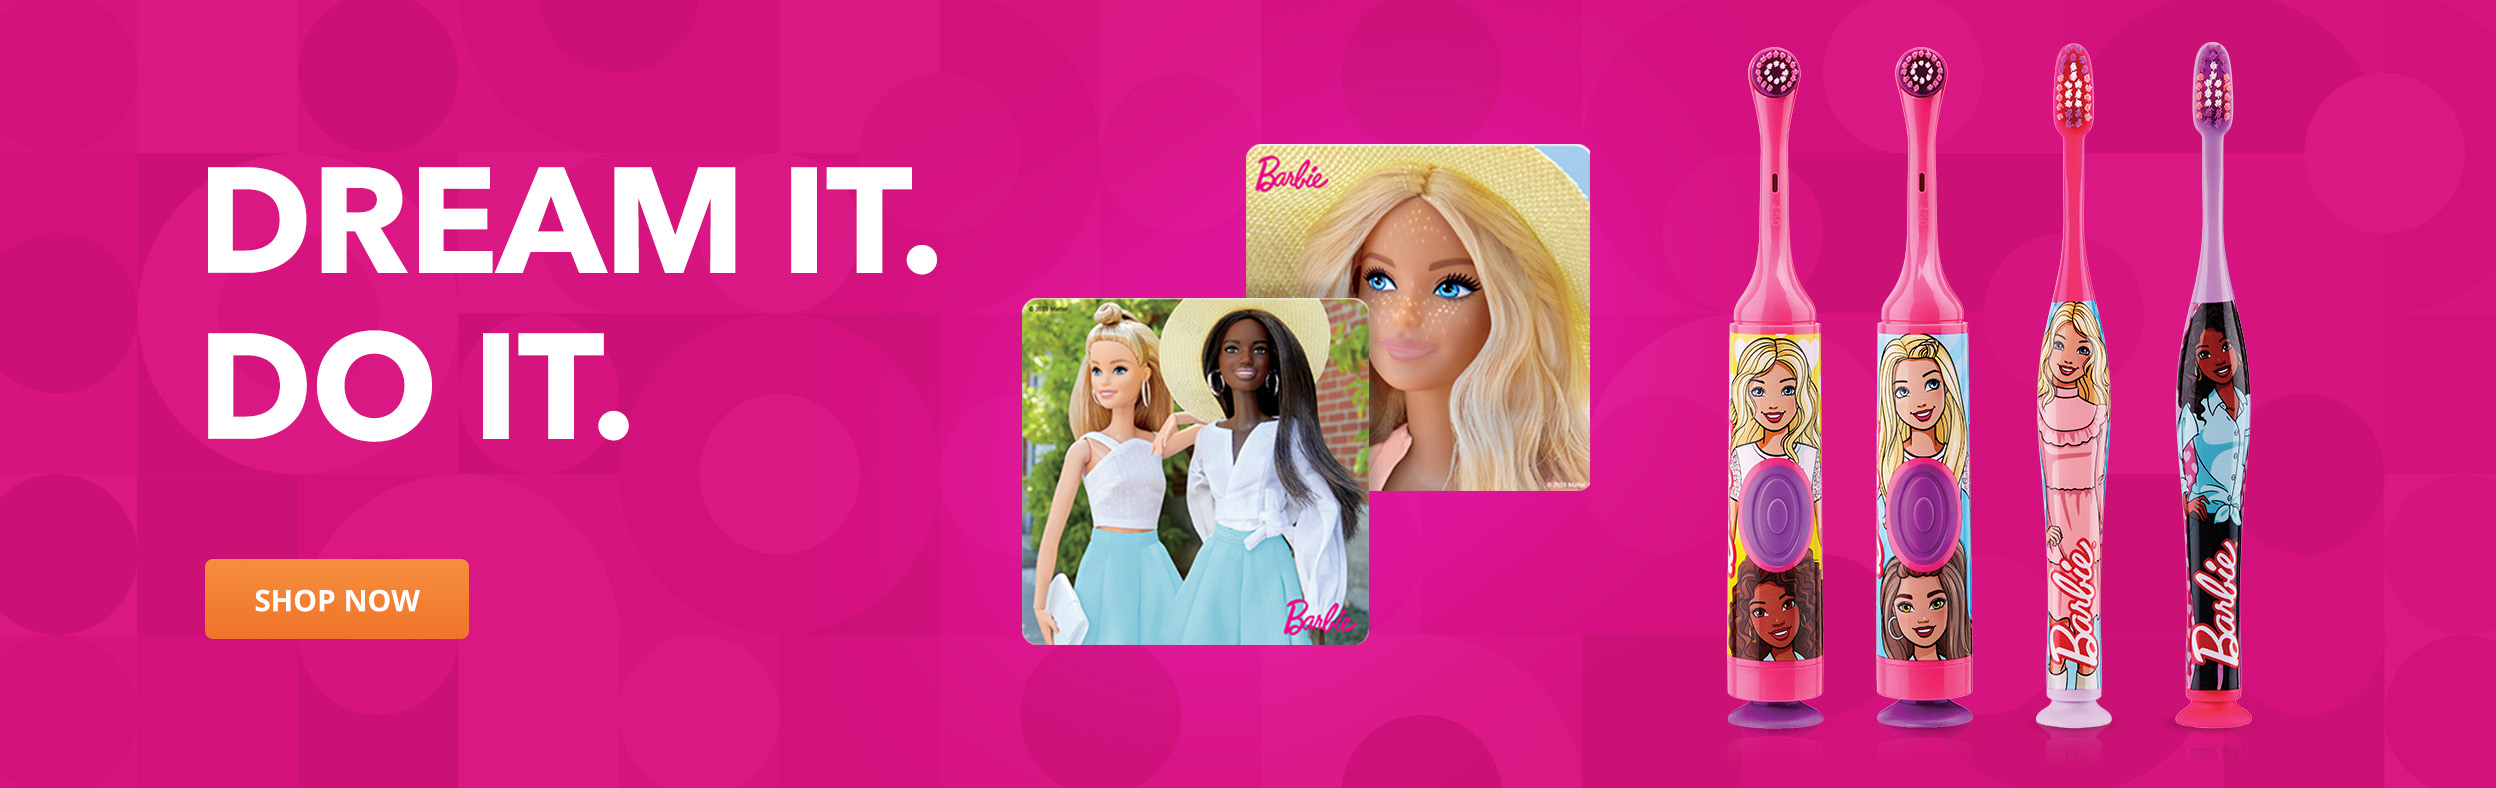 Barbie - Dream it. Do it.